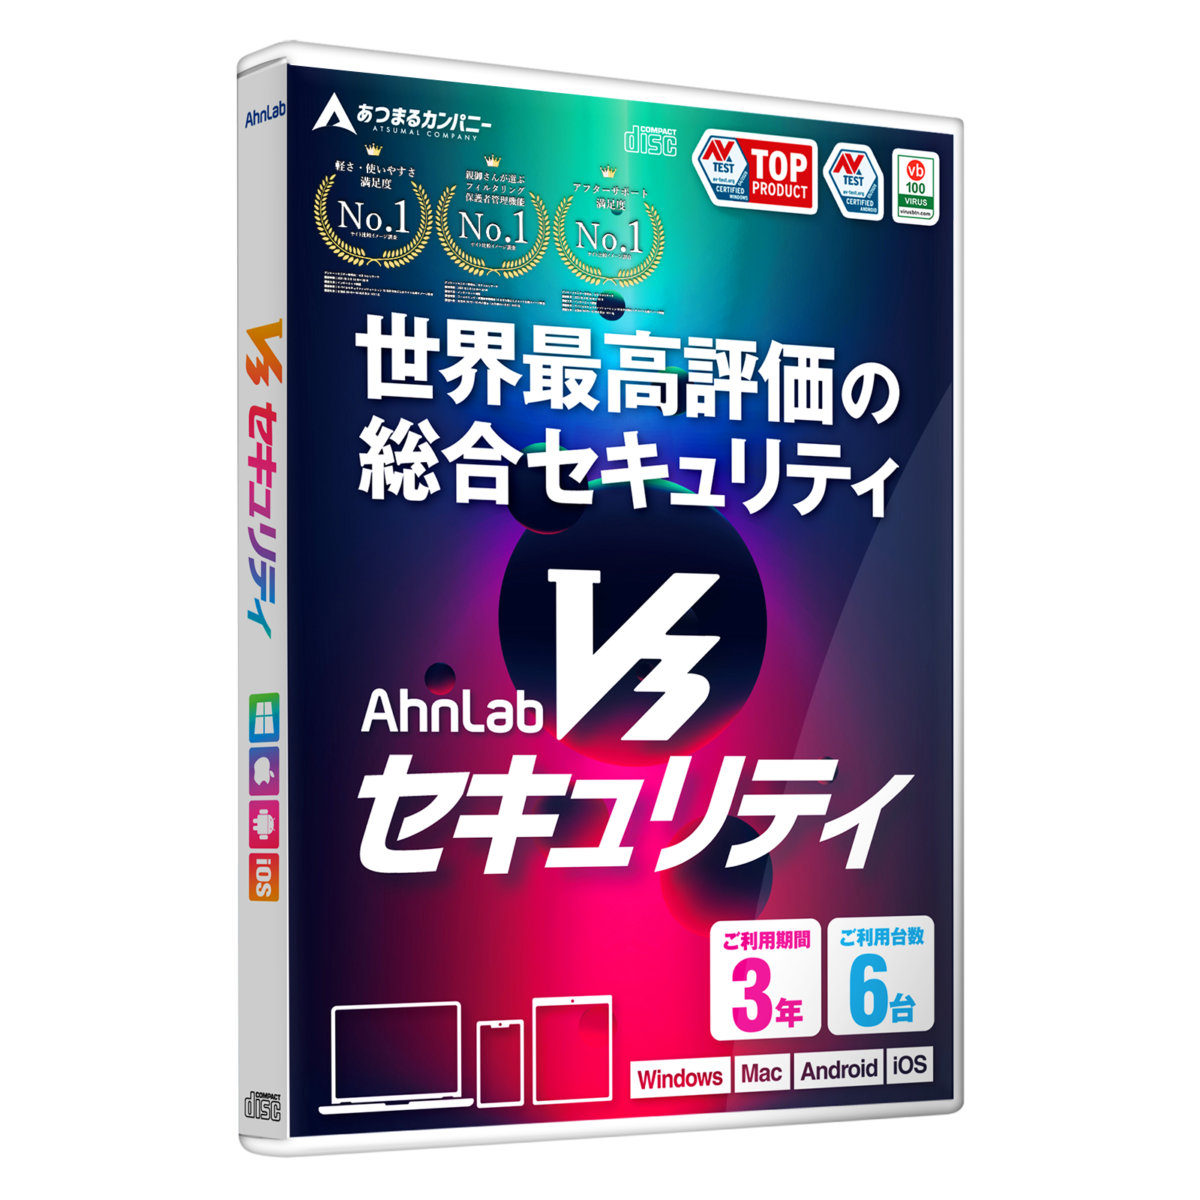 10916円 世界の人気ブランド アンラボ セキュリティソフト AhnLab V3 Security Win Mac iOS Android対応 4年3台版